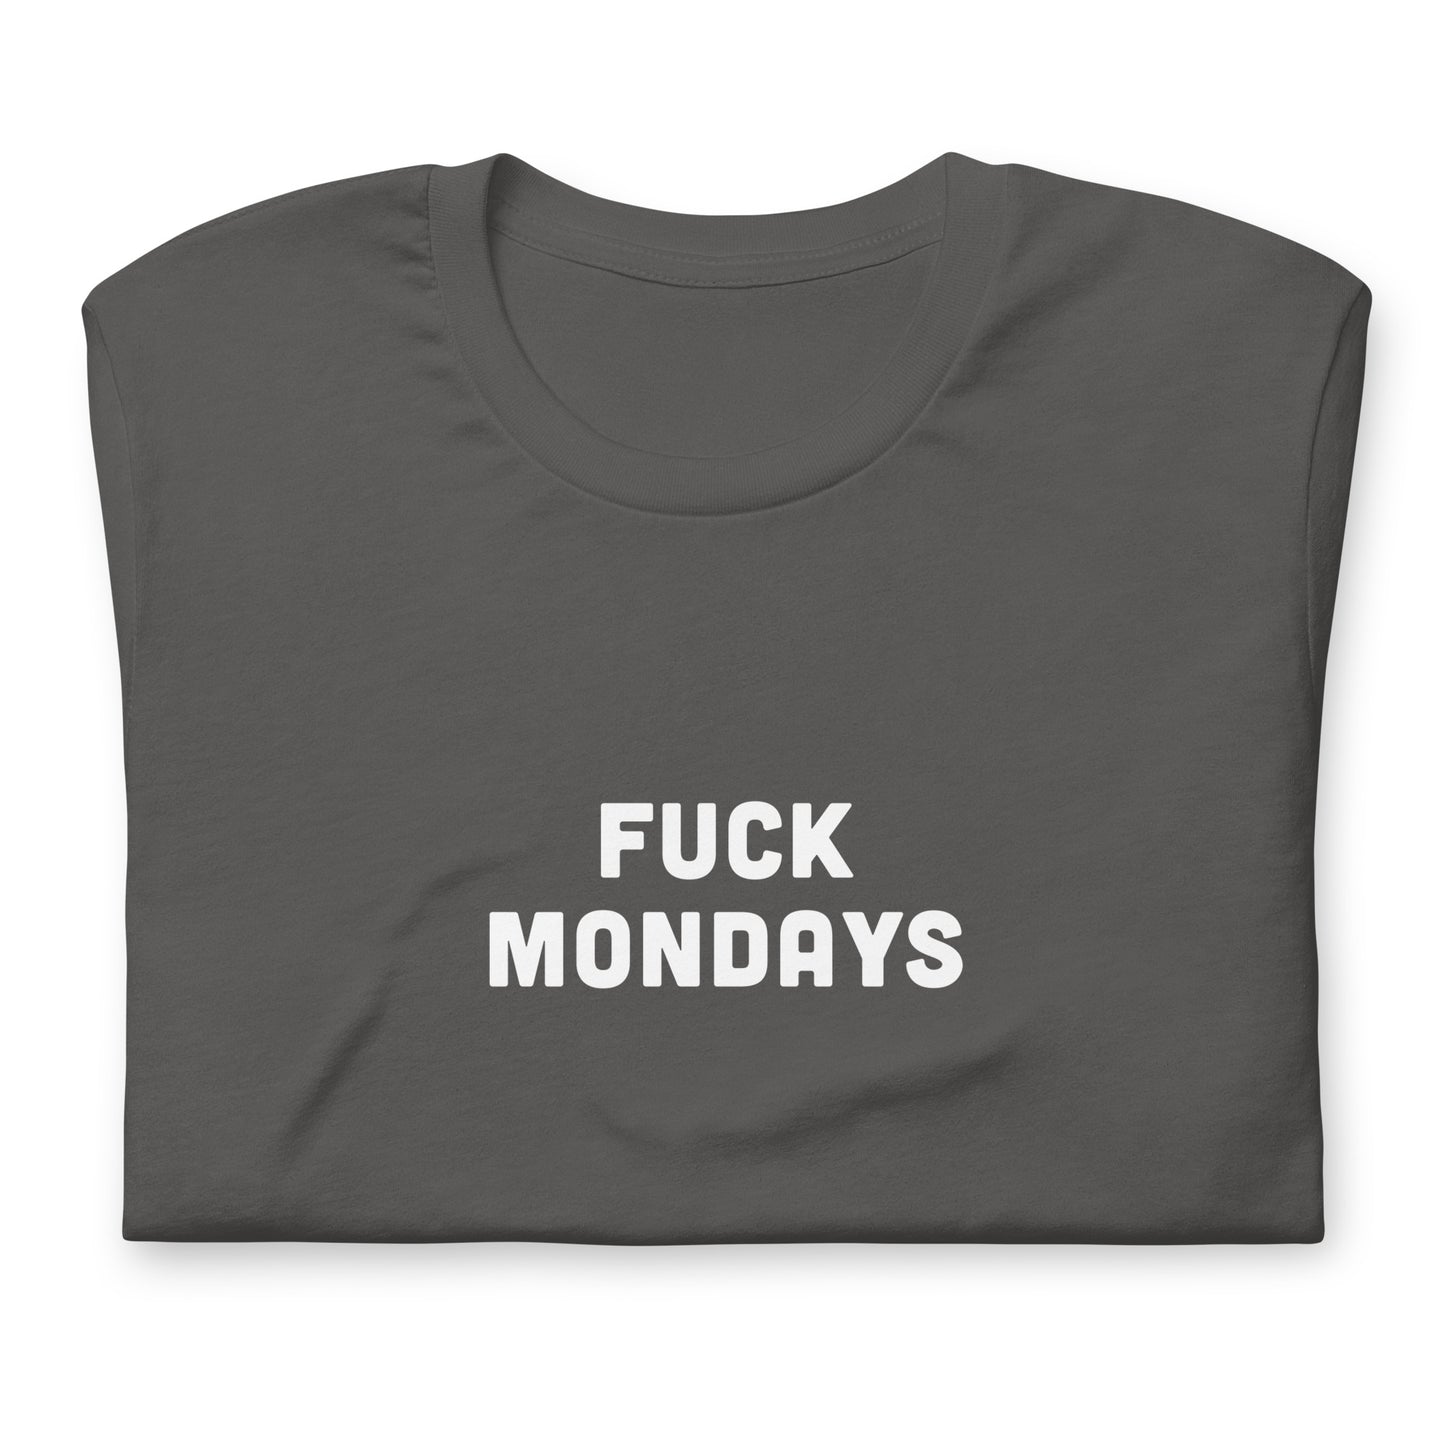 Fuck Mondays T-Shirt Size 2XL Color Black